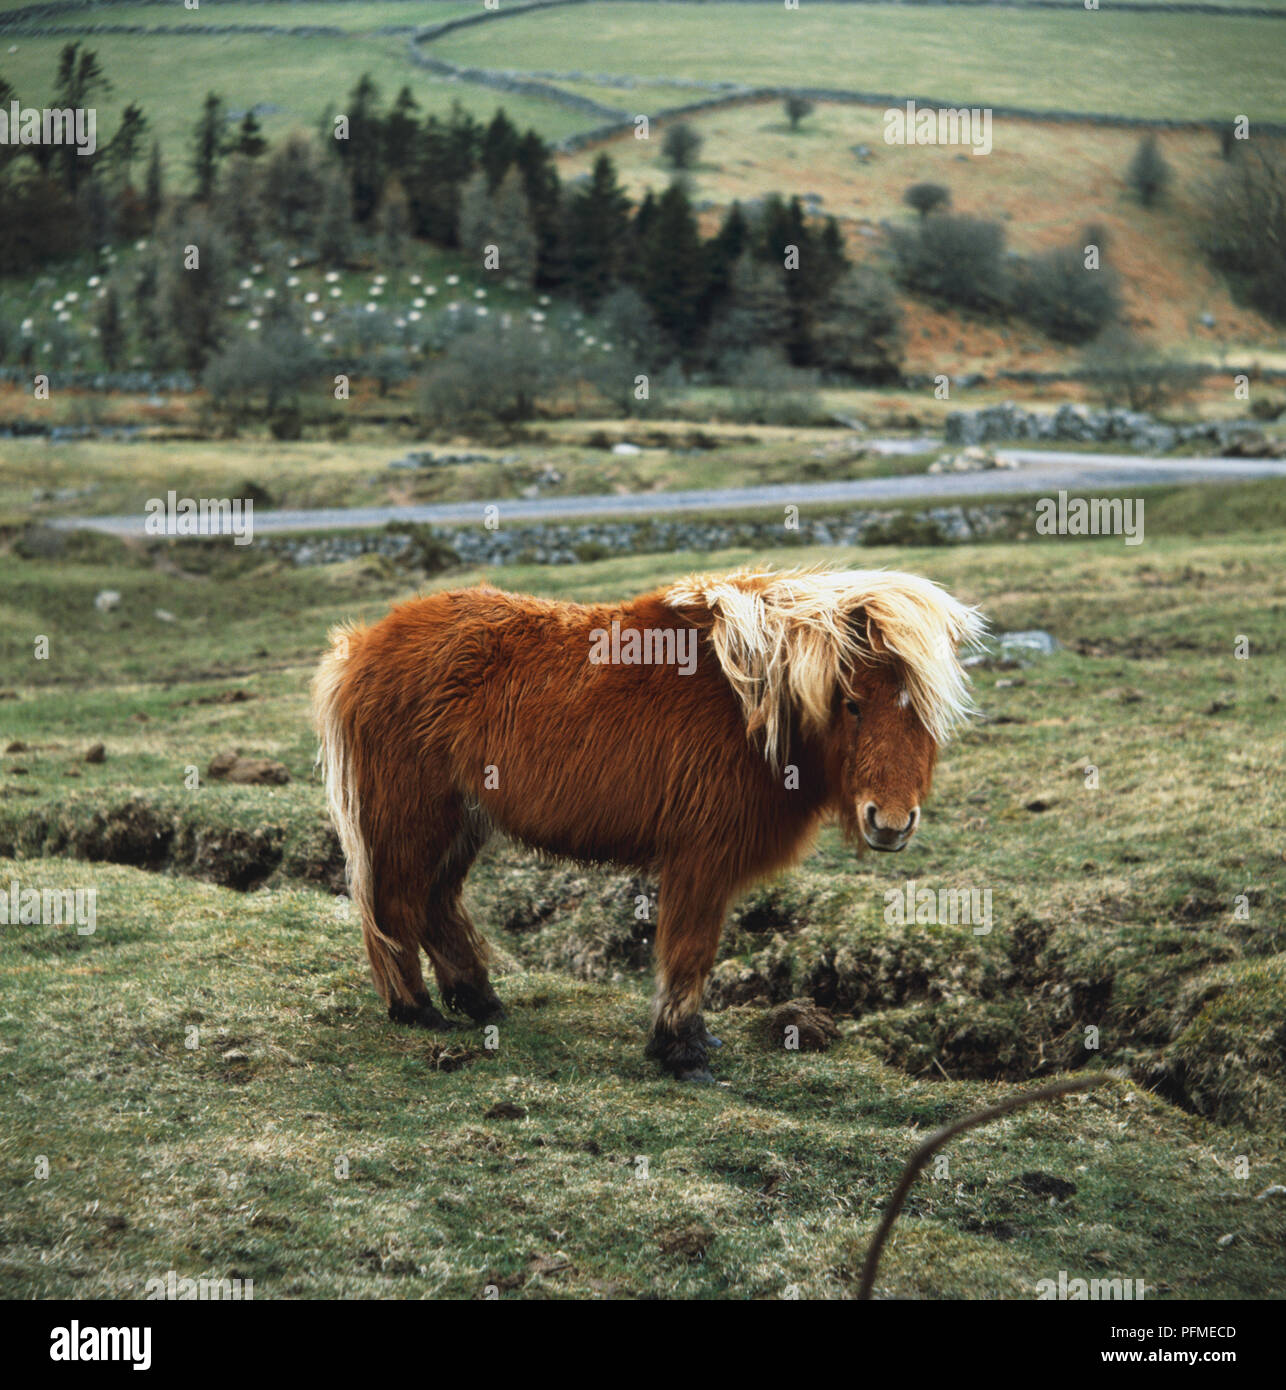 Chestnut Dartmoor Pony standing in field. Stock Photo